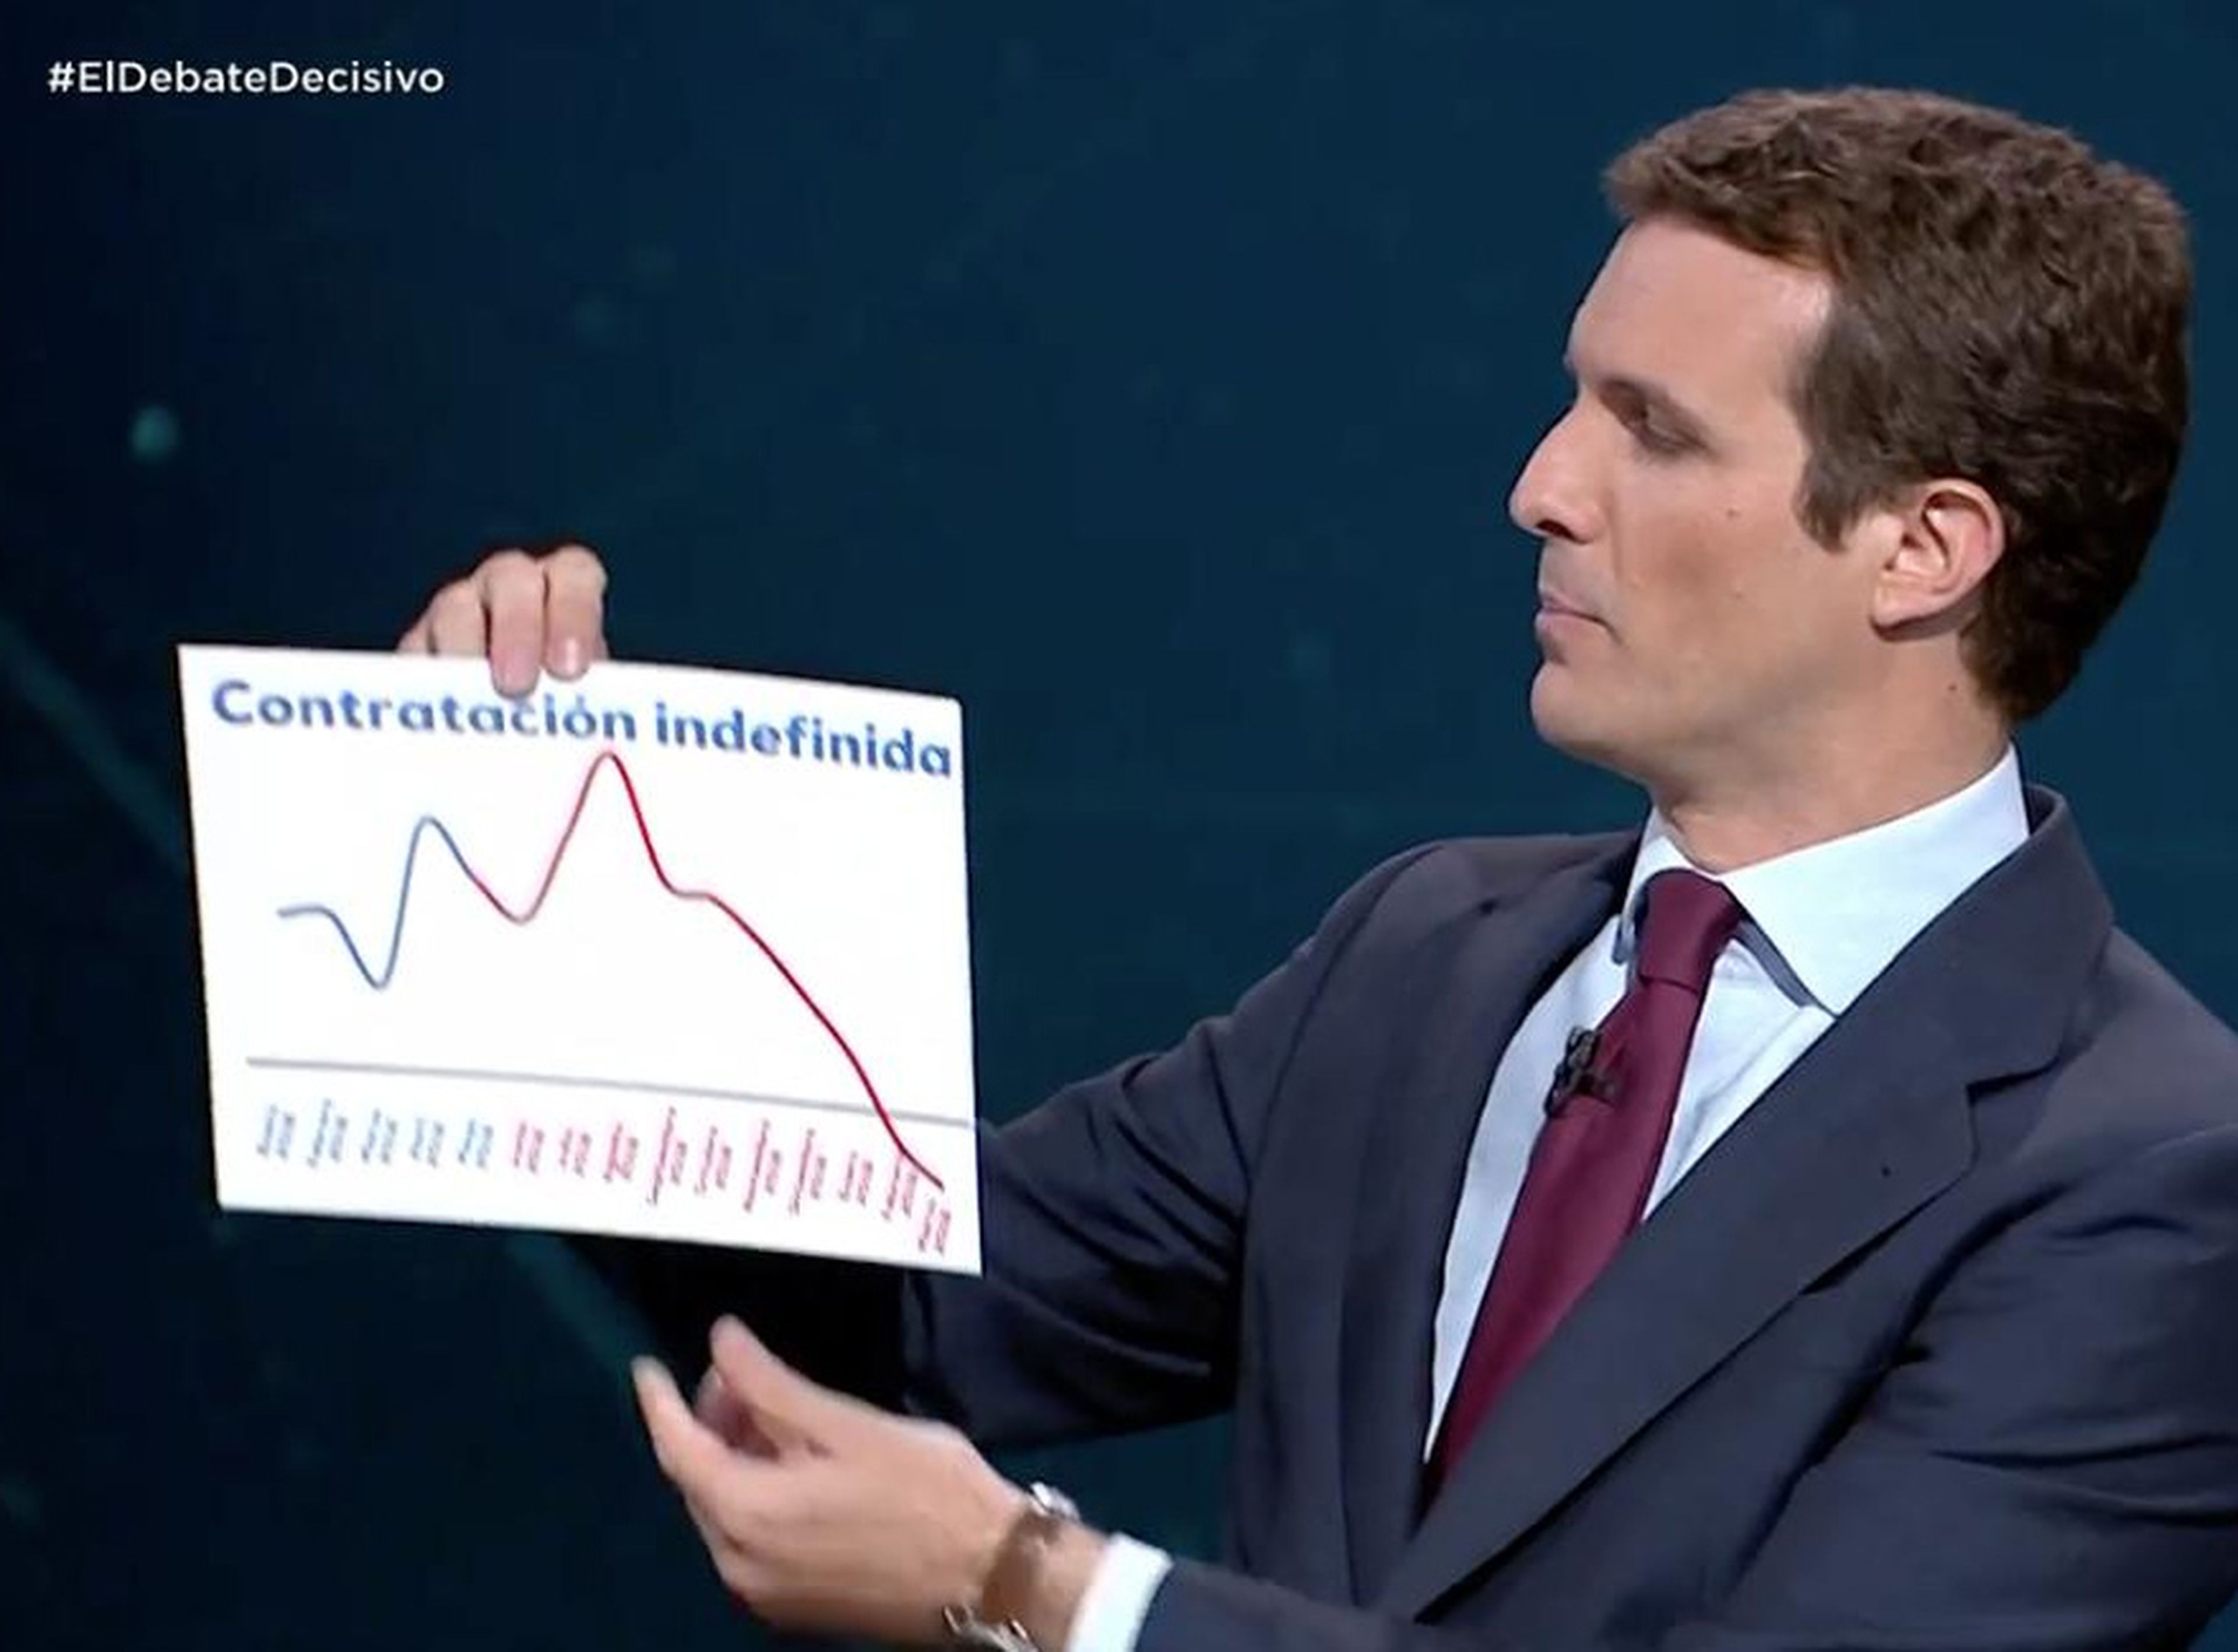 El gráfico de la contratación indefinida de Pablo Casado en el debate electoral